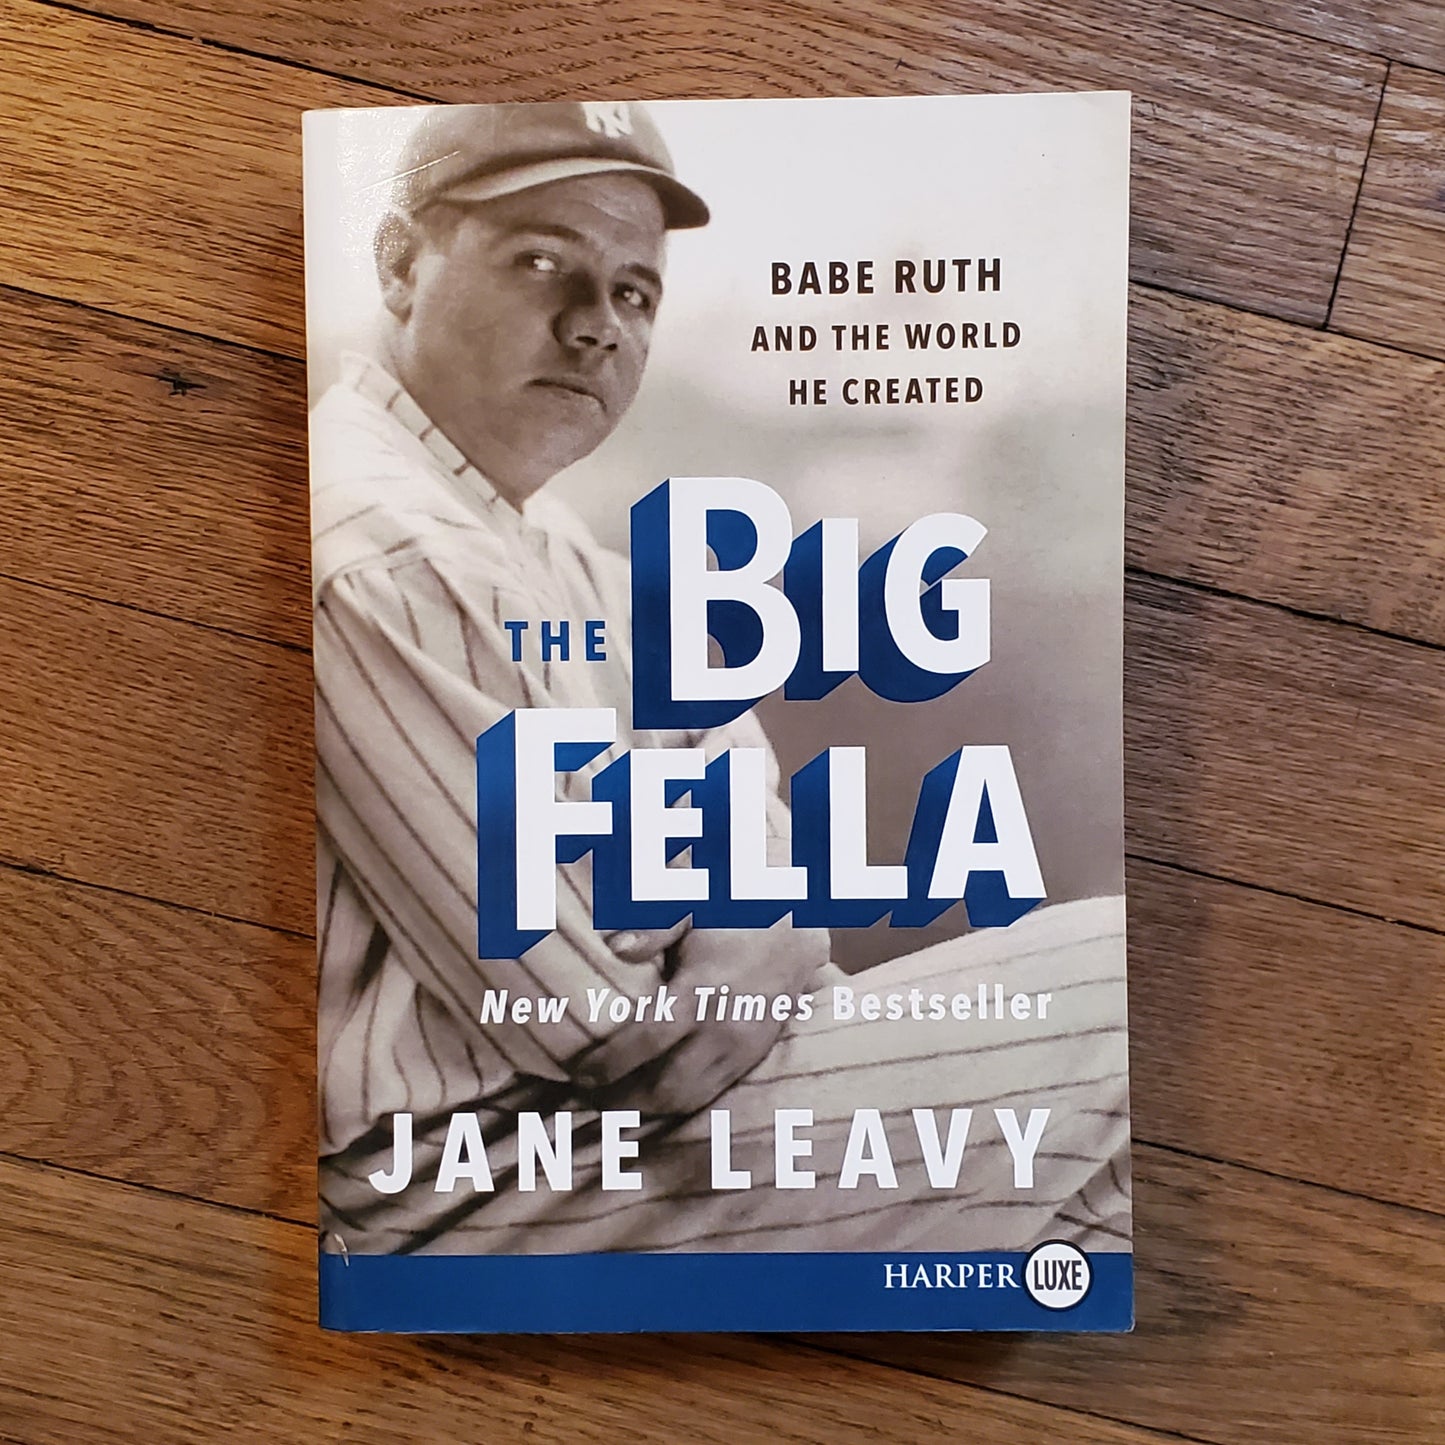 The Big Fella: Babe Ruth